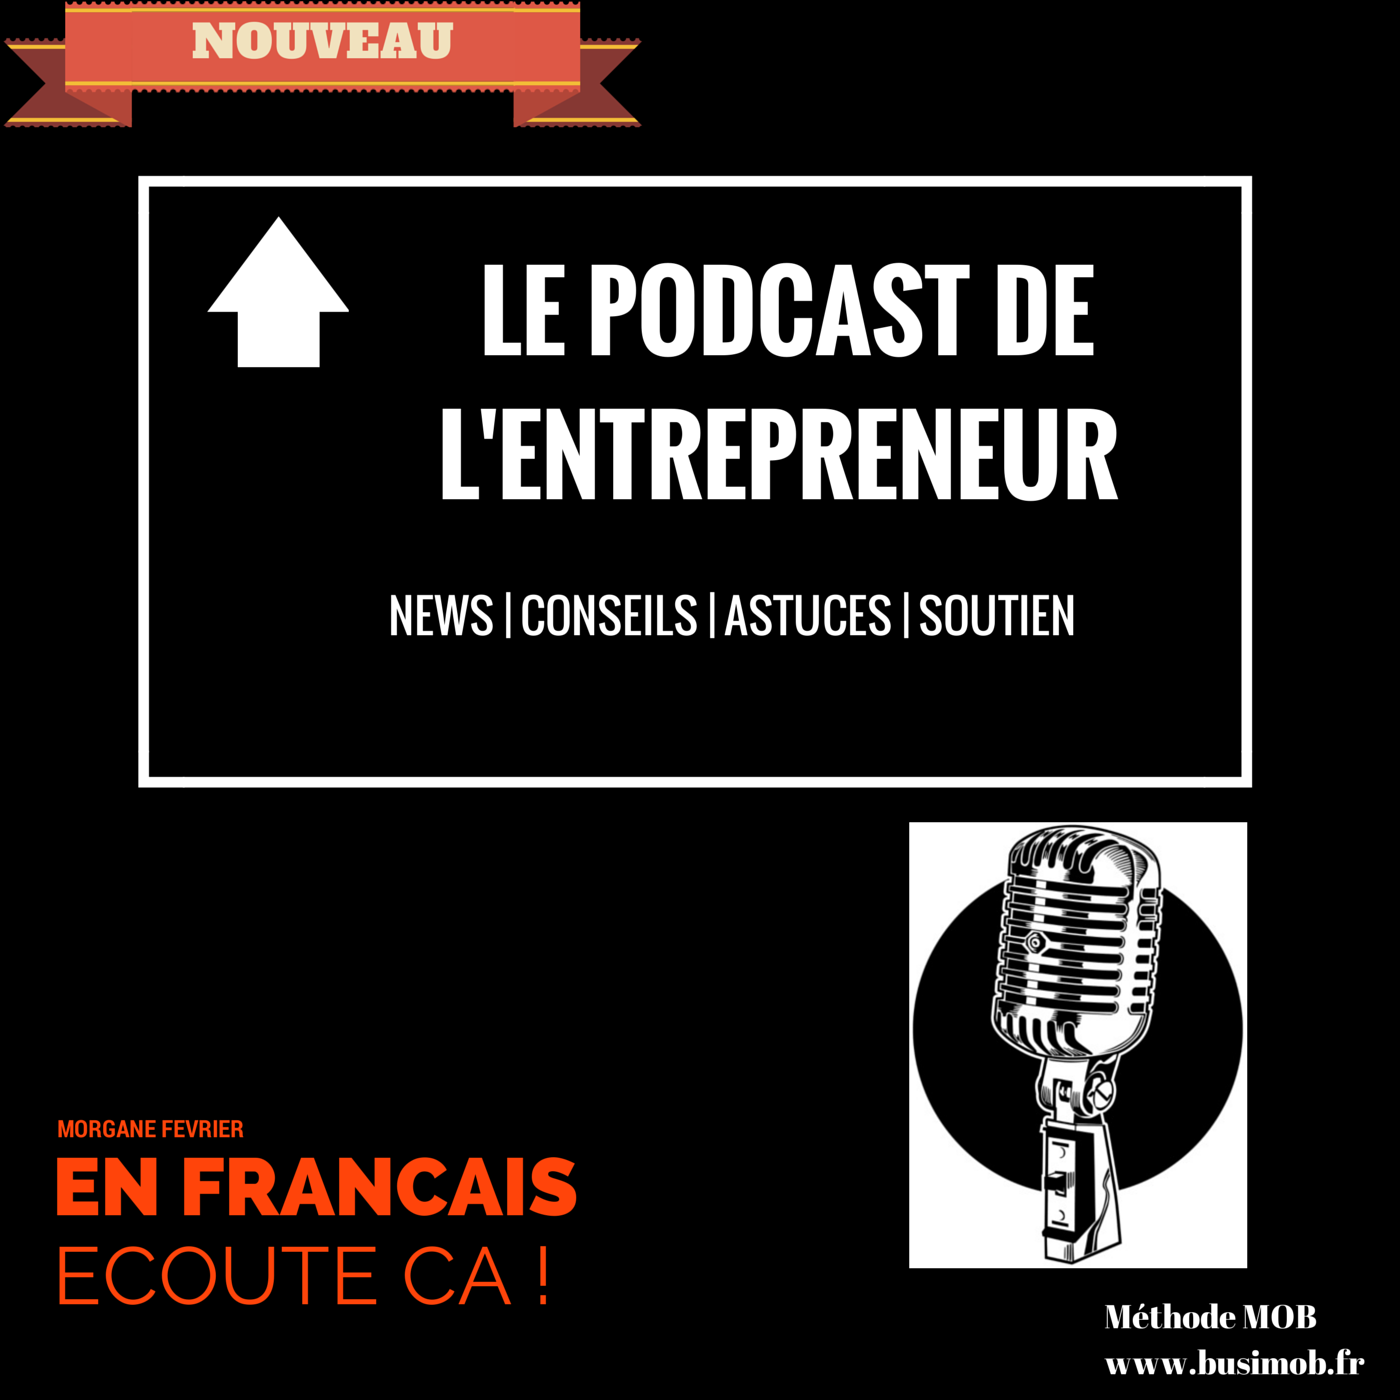 Le podcast de l’entrepreneur